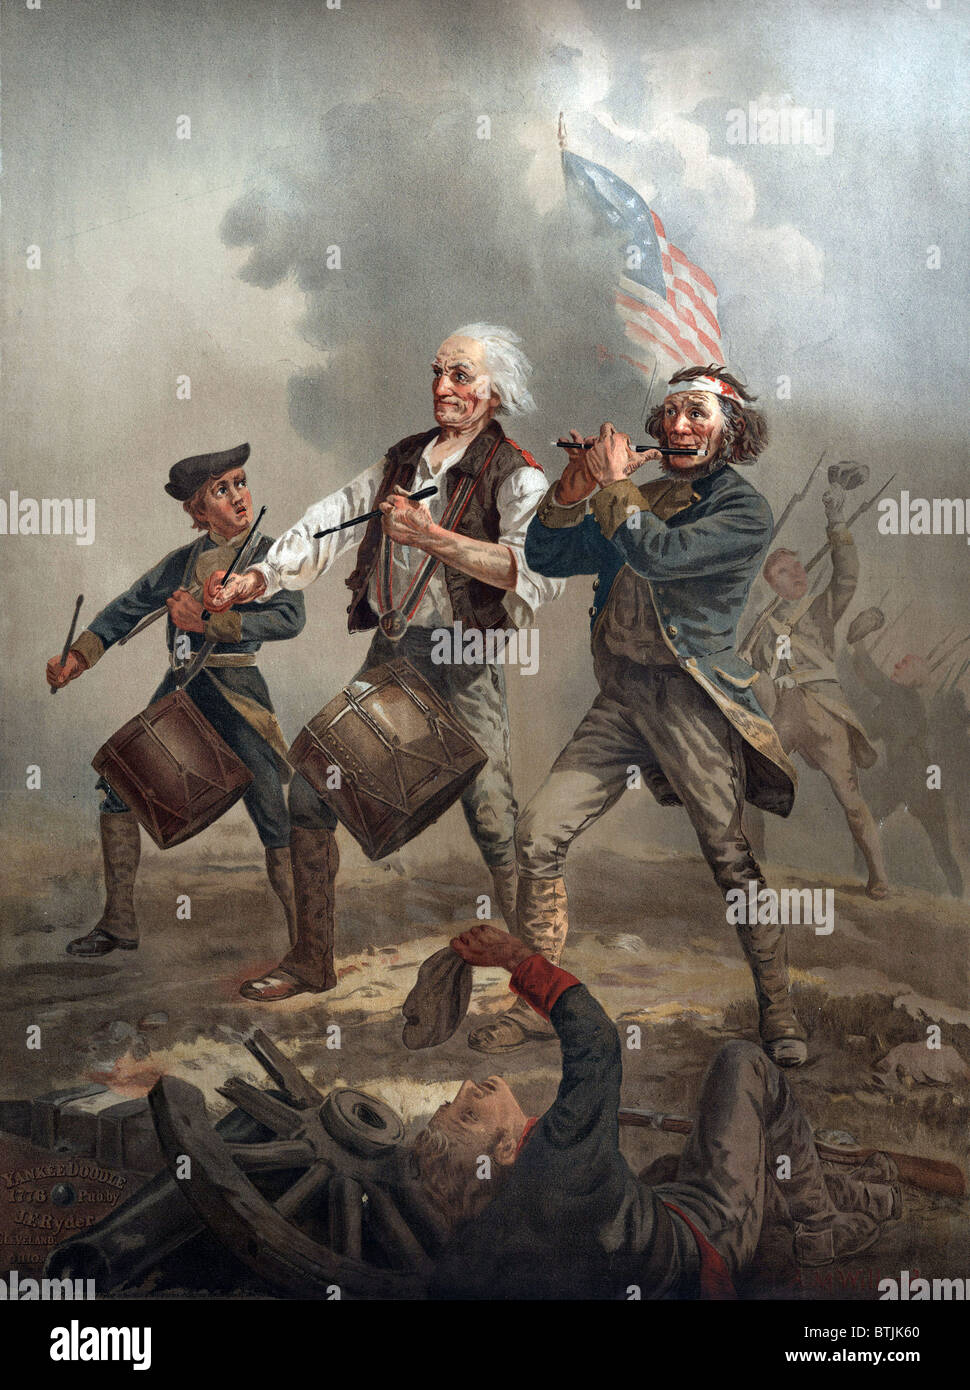 La Révolution américaine, Yankee Doodle 1776, trois patriotes, deux à jouer de la batterie et un jouer a fife menant des troupes au combat, par Archibald M. Willard, vers 1876. Banque D'Images